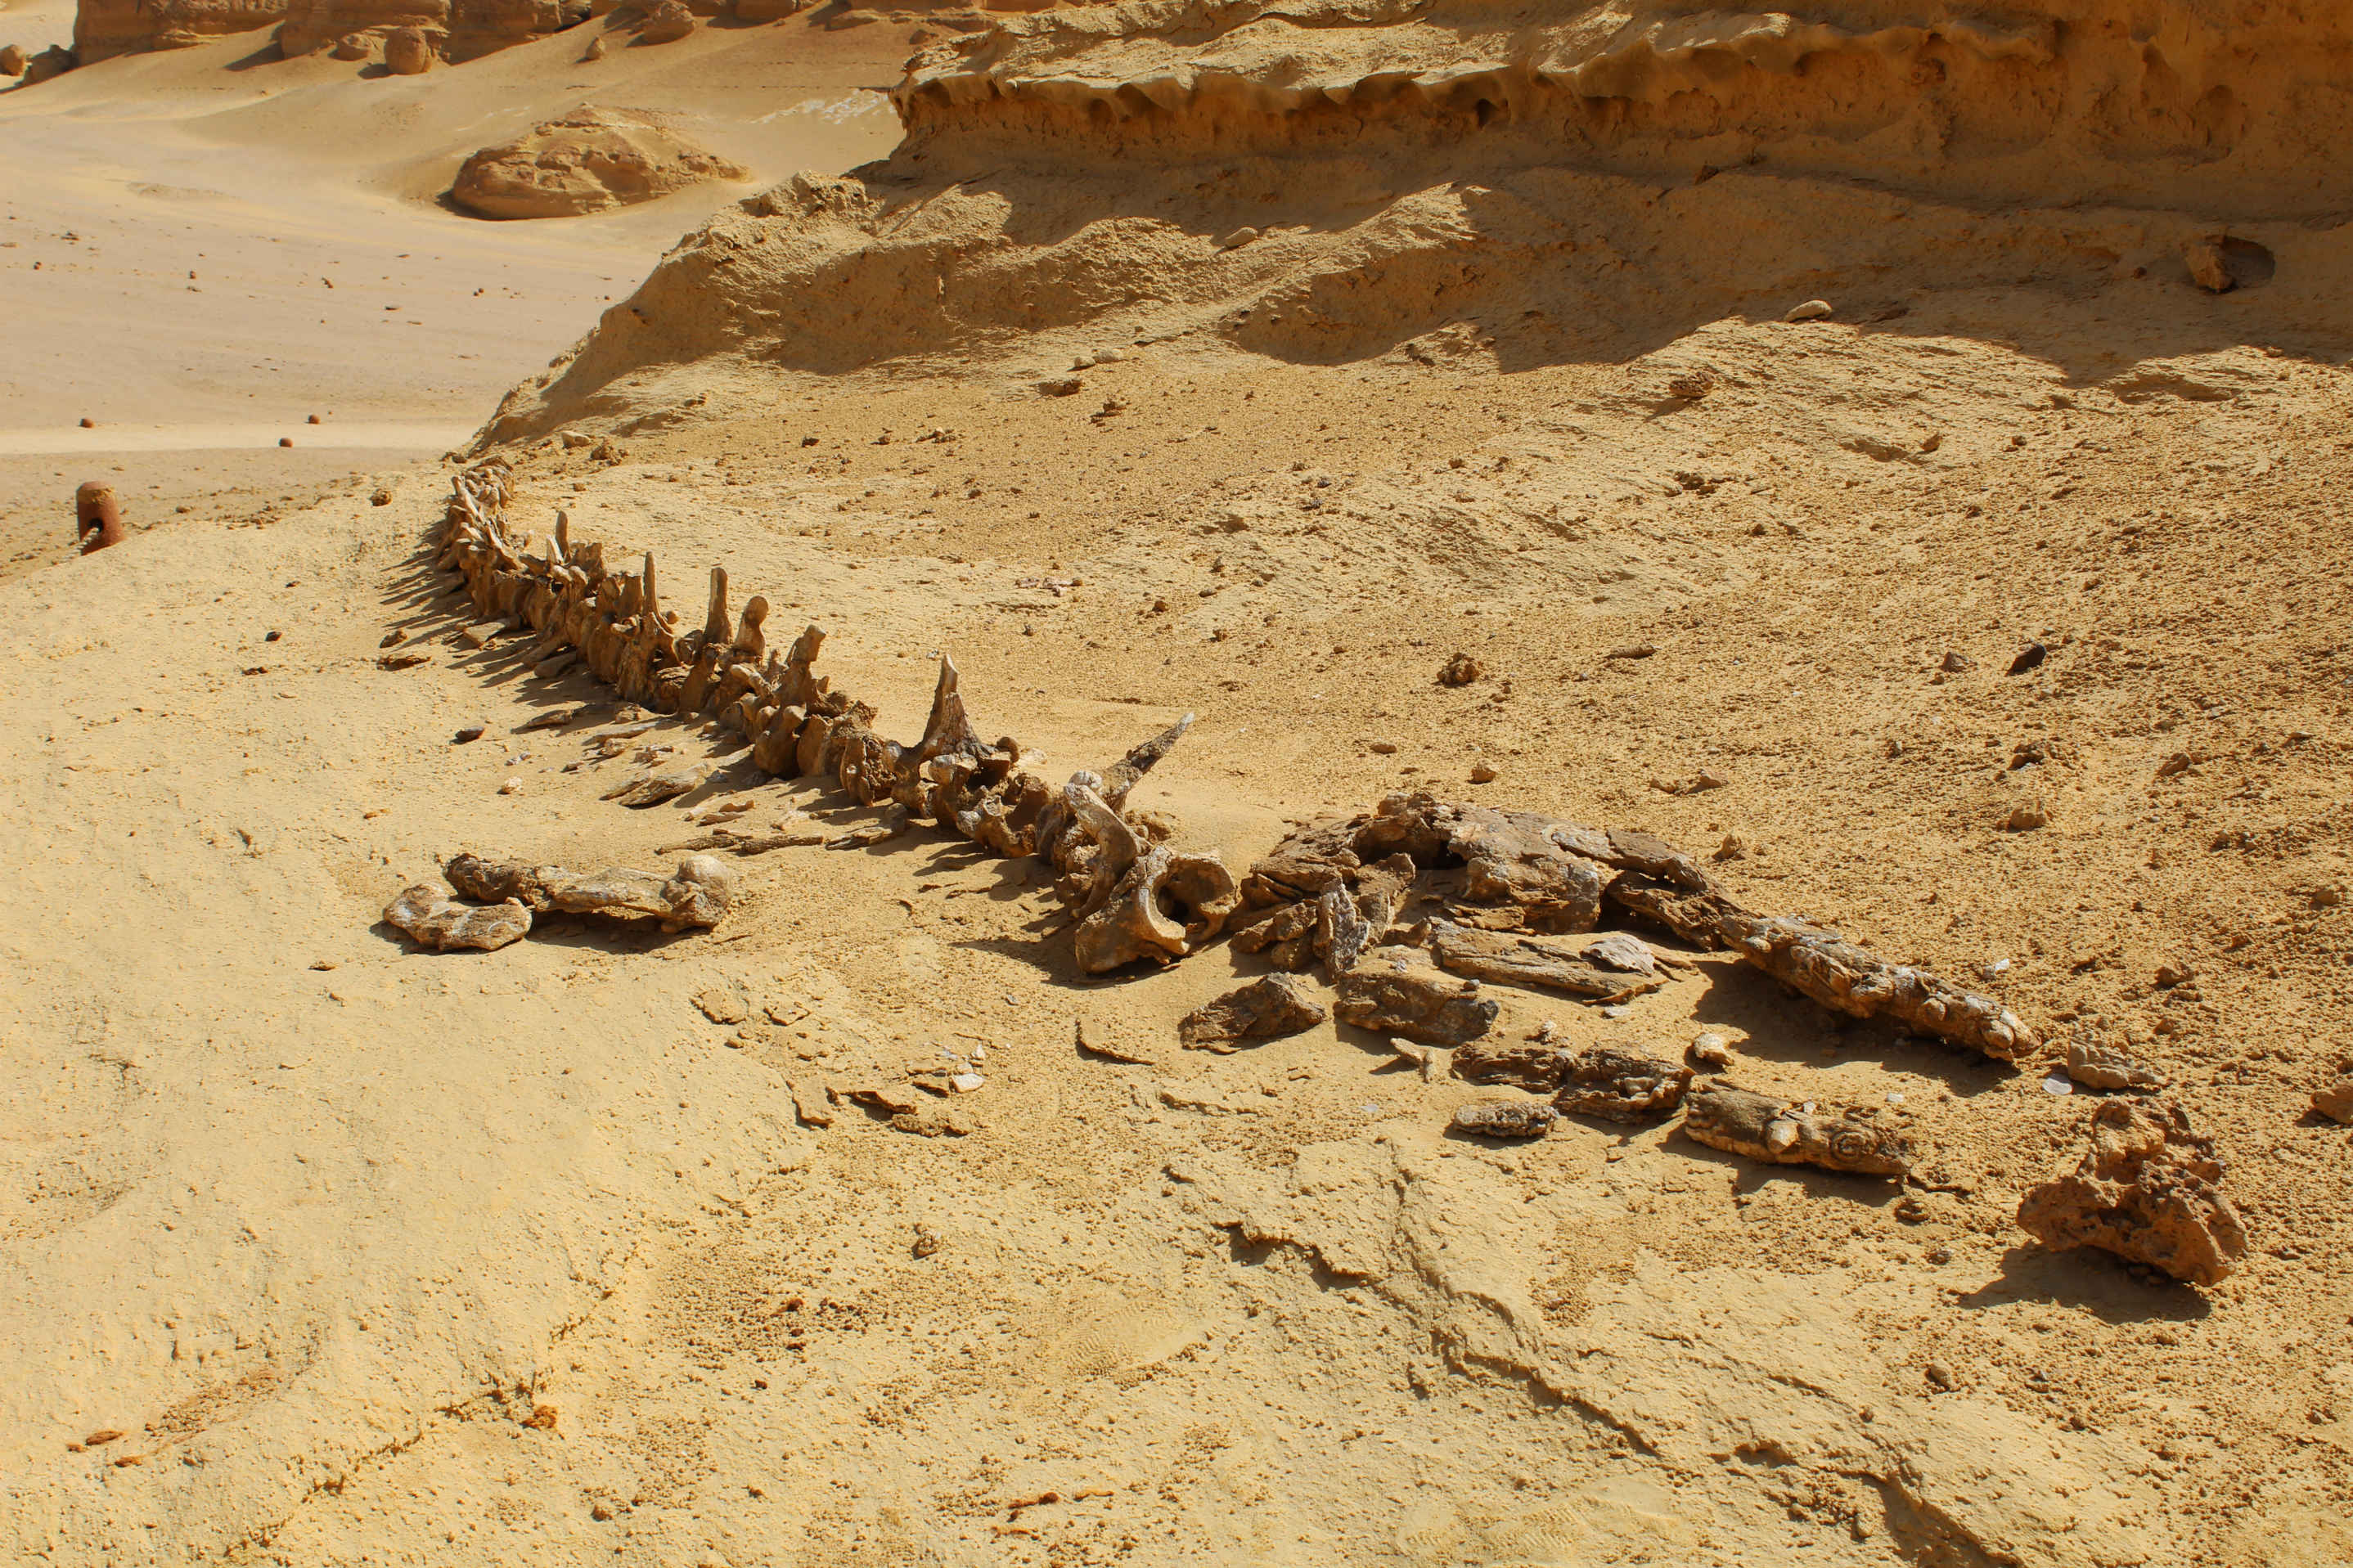 Les fossiles de mammifères marins dans les déserts attestent de la submersion de ces zones par les eaux au cours du temps profond. © Ahmed, Adobe Stock